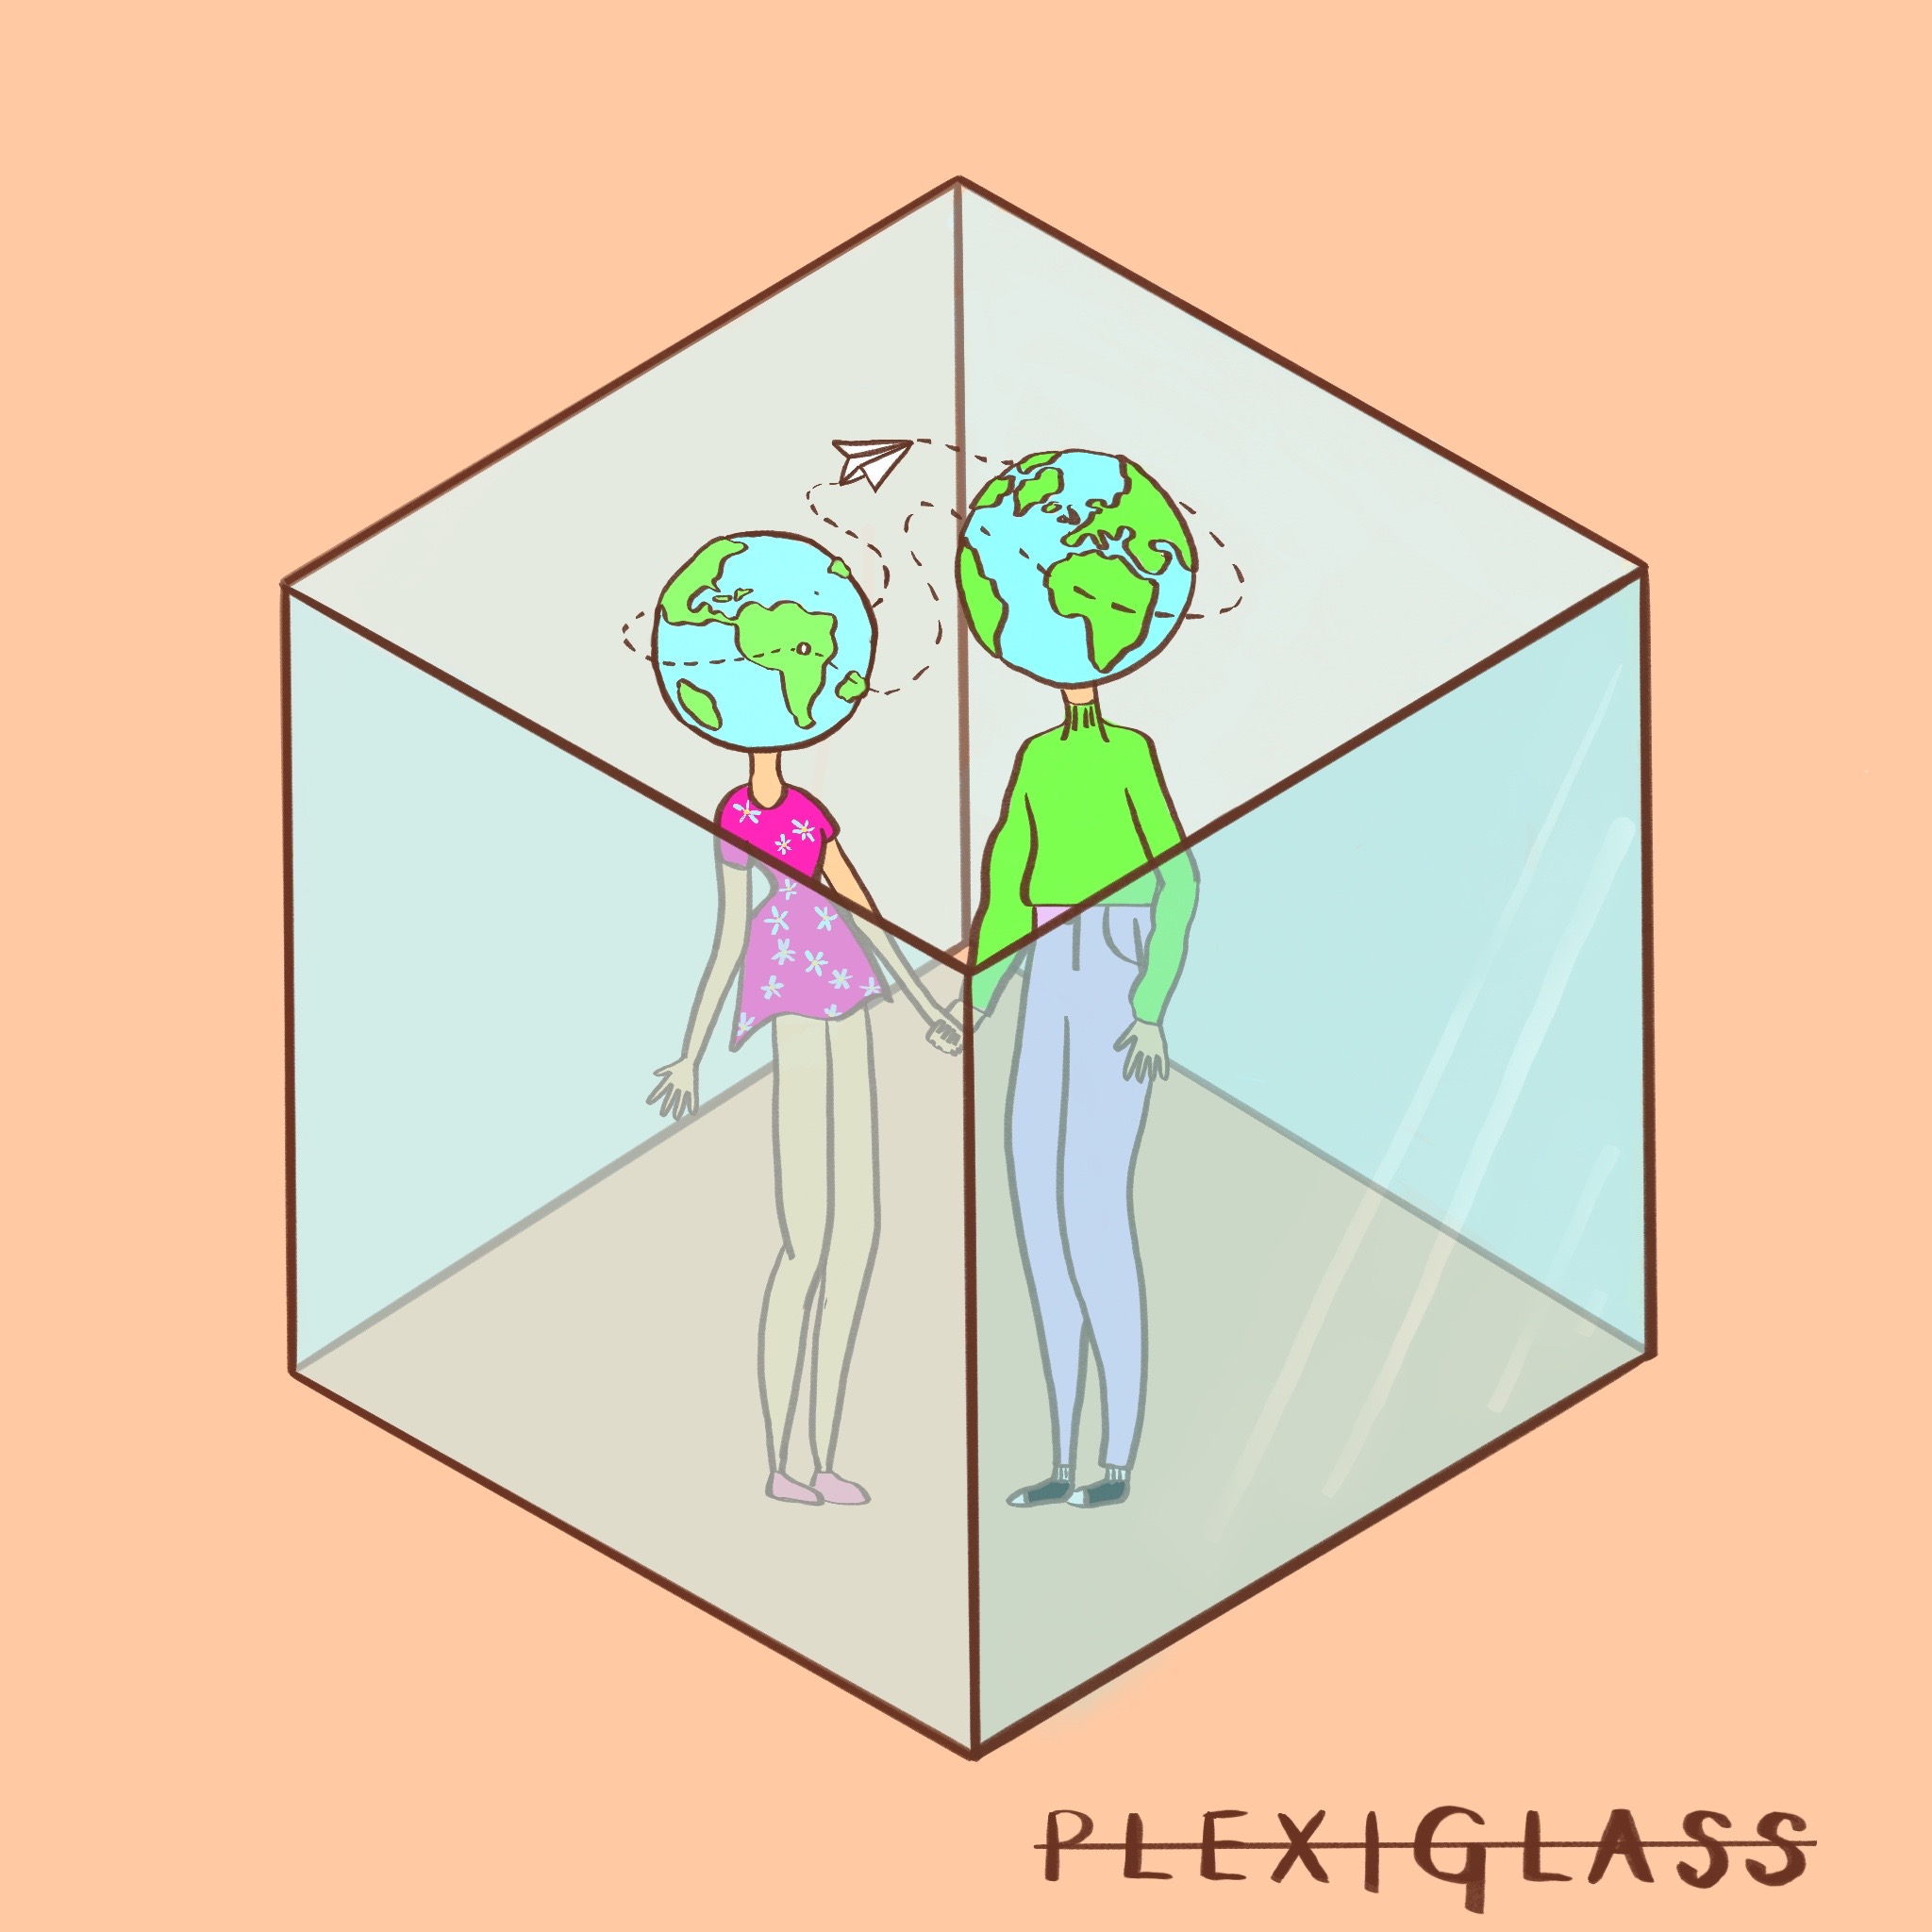 VINCE “Plexiglass” è il nuovo singolo del cantautore e producer romano 